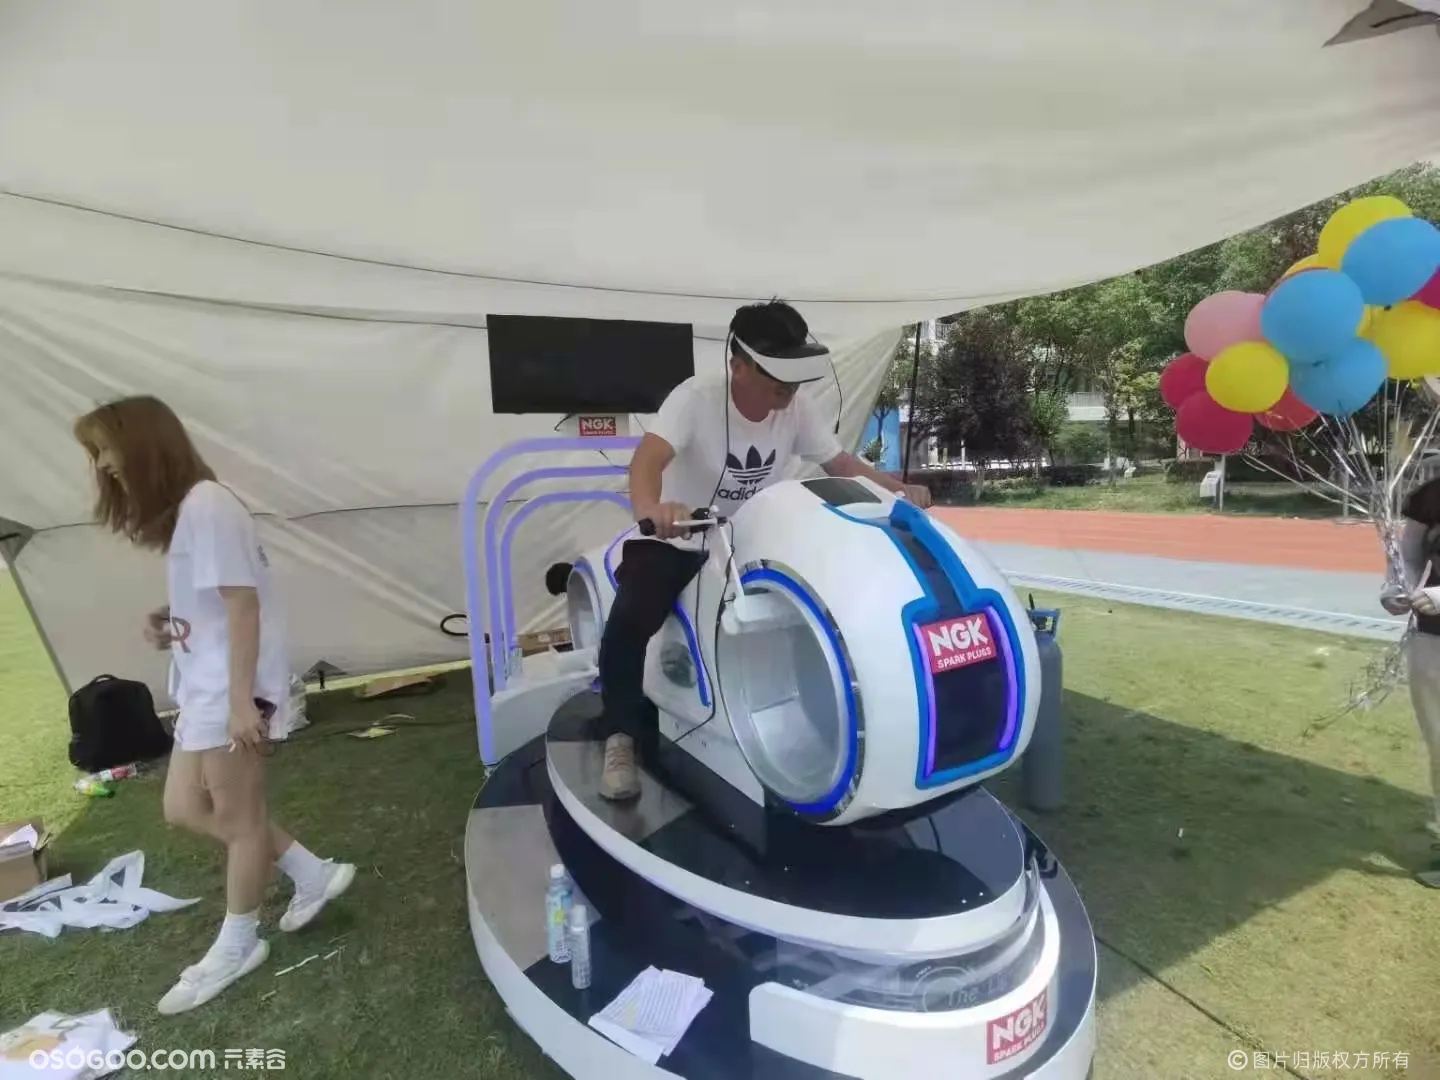 互动暖场科技设备 VR摩托车出租 炫酷VR摩托车出租